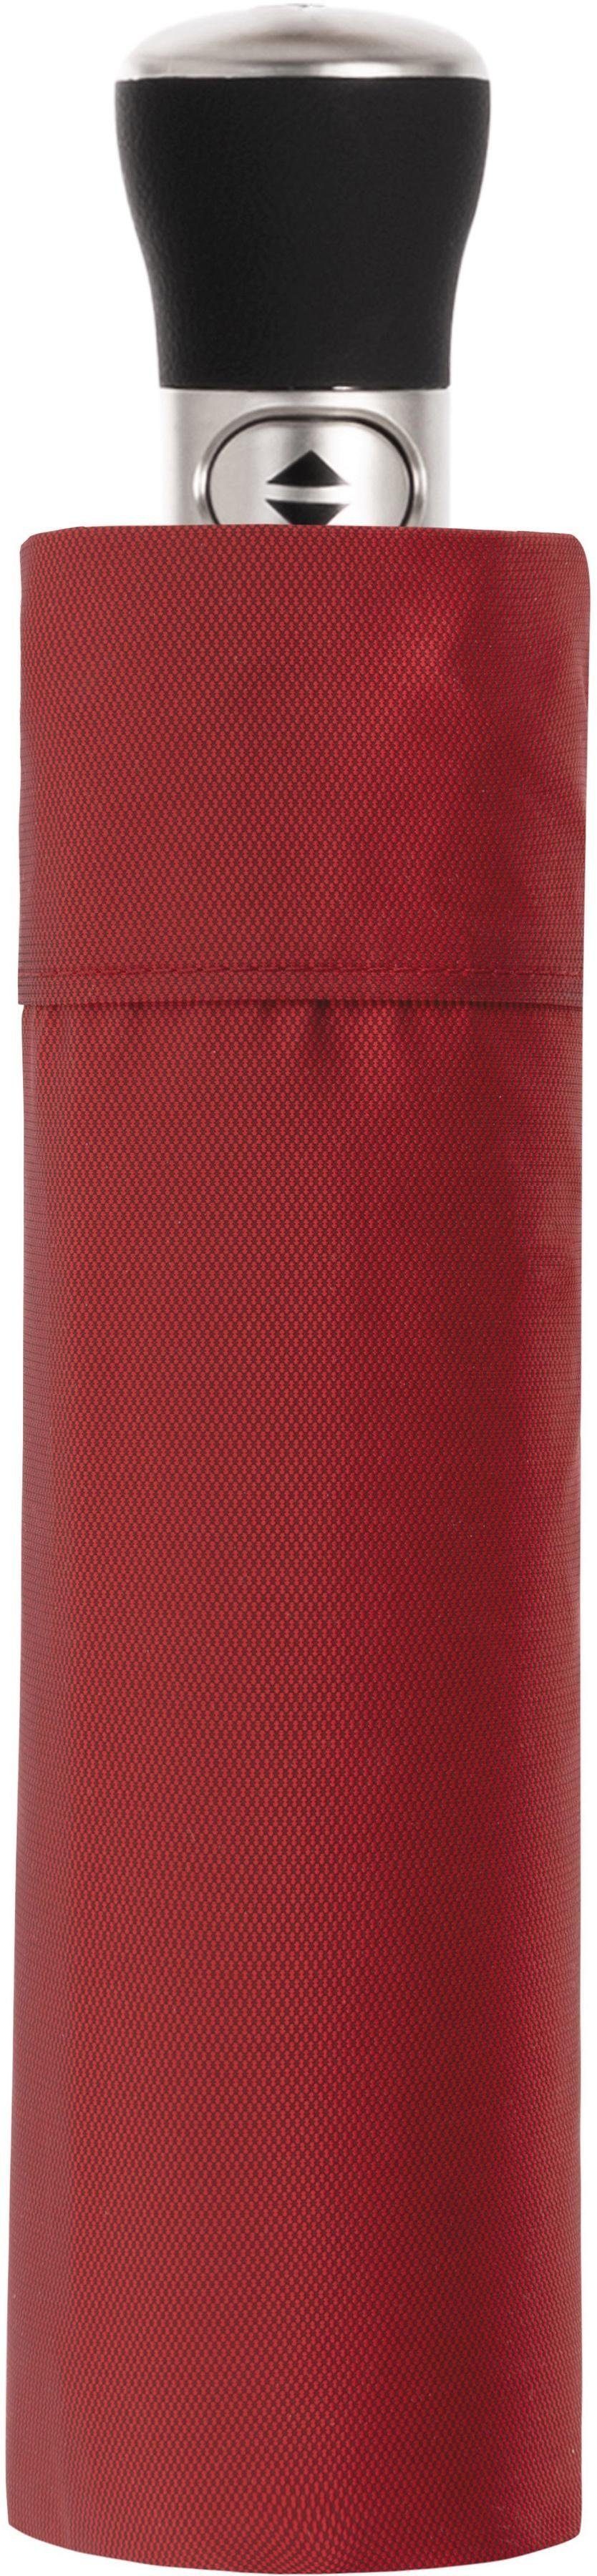 doppler MANUFAKTUR Taschenregenschirm Oxford rot, Uni, handgemachter Manufaktur-Taschenschirm